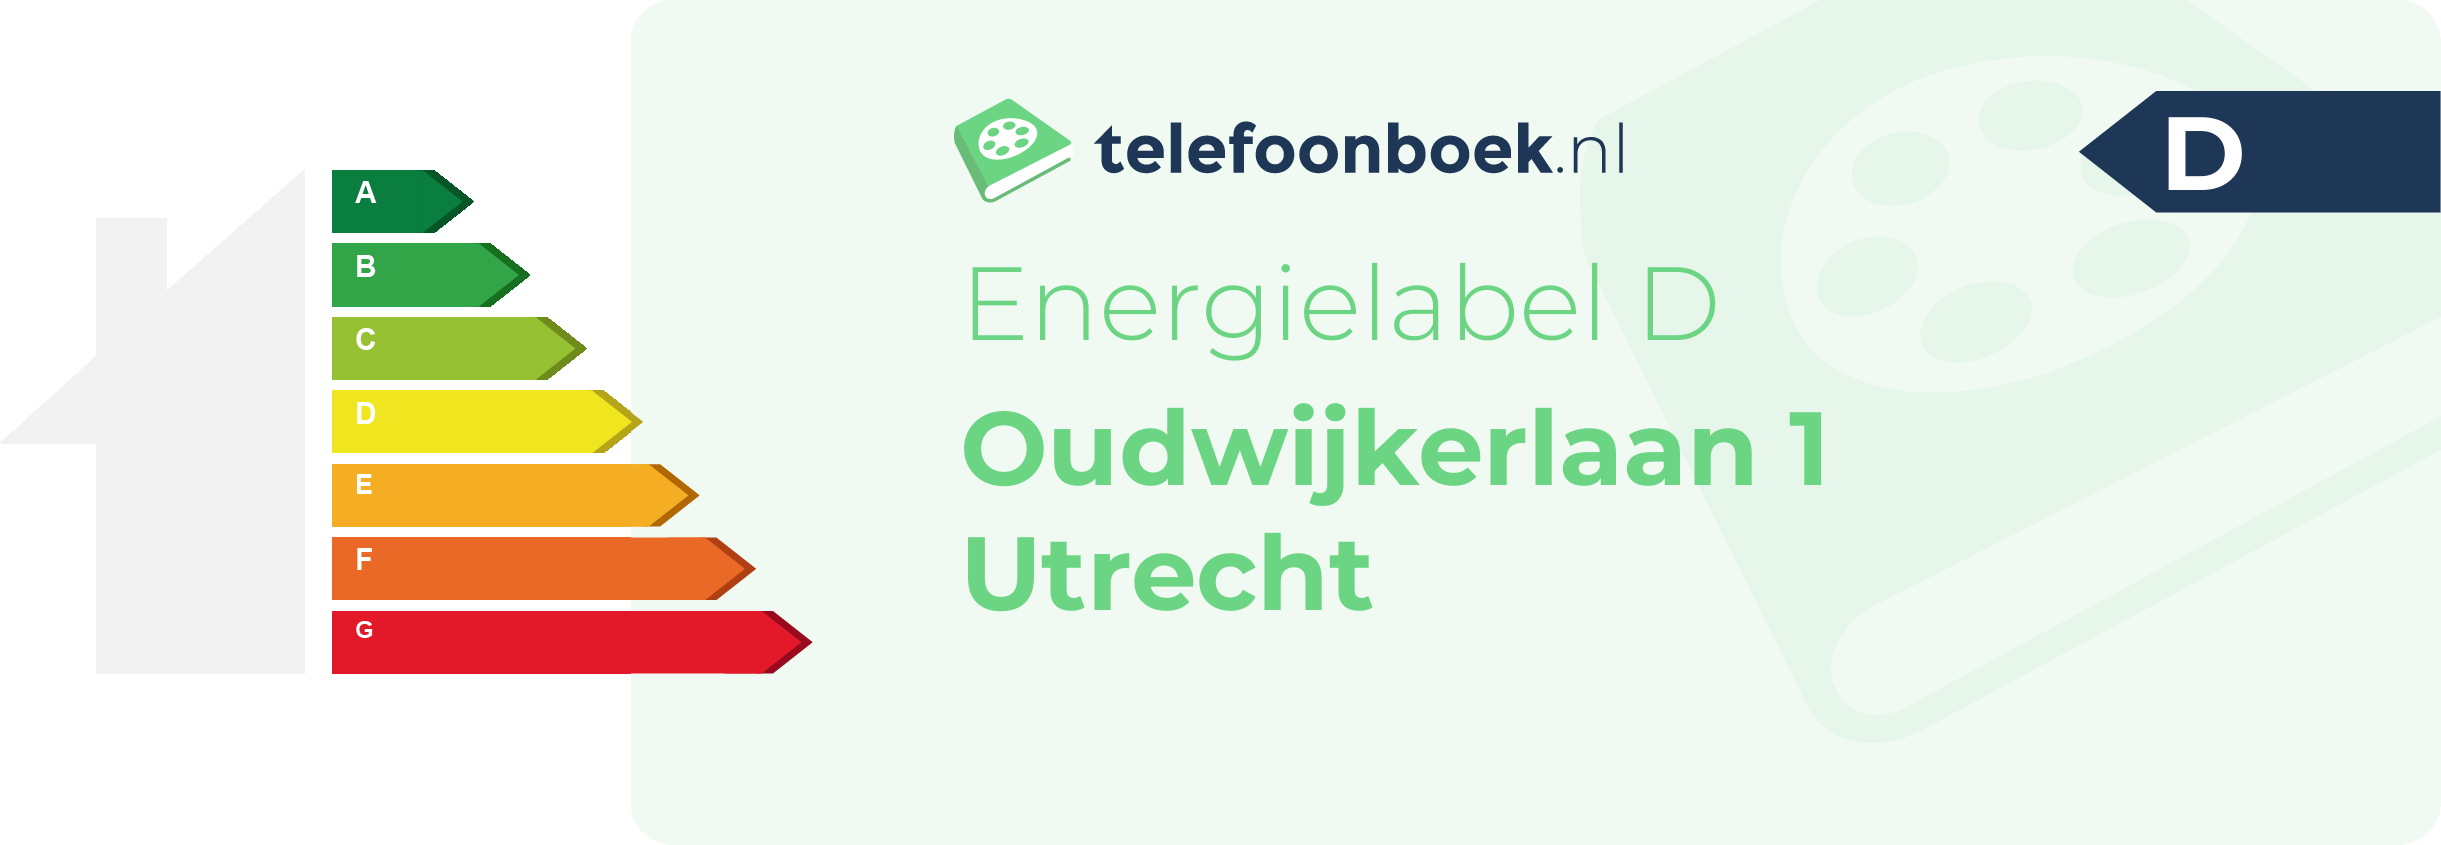 Energielabel Oudwijkerlaan 1 Utrecht